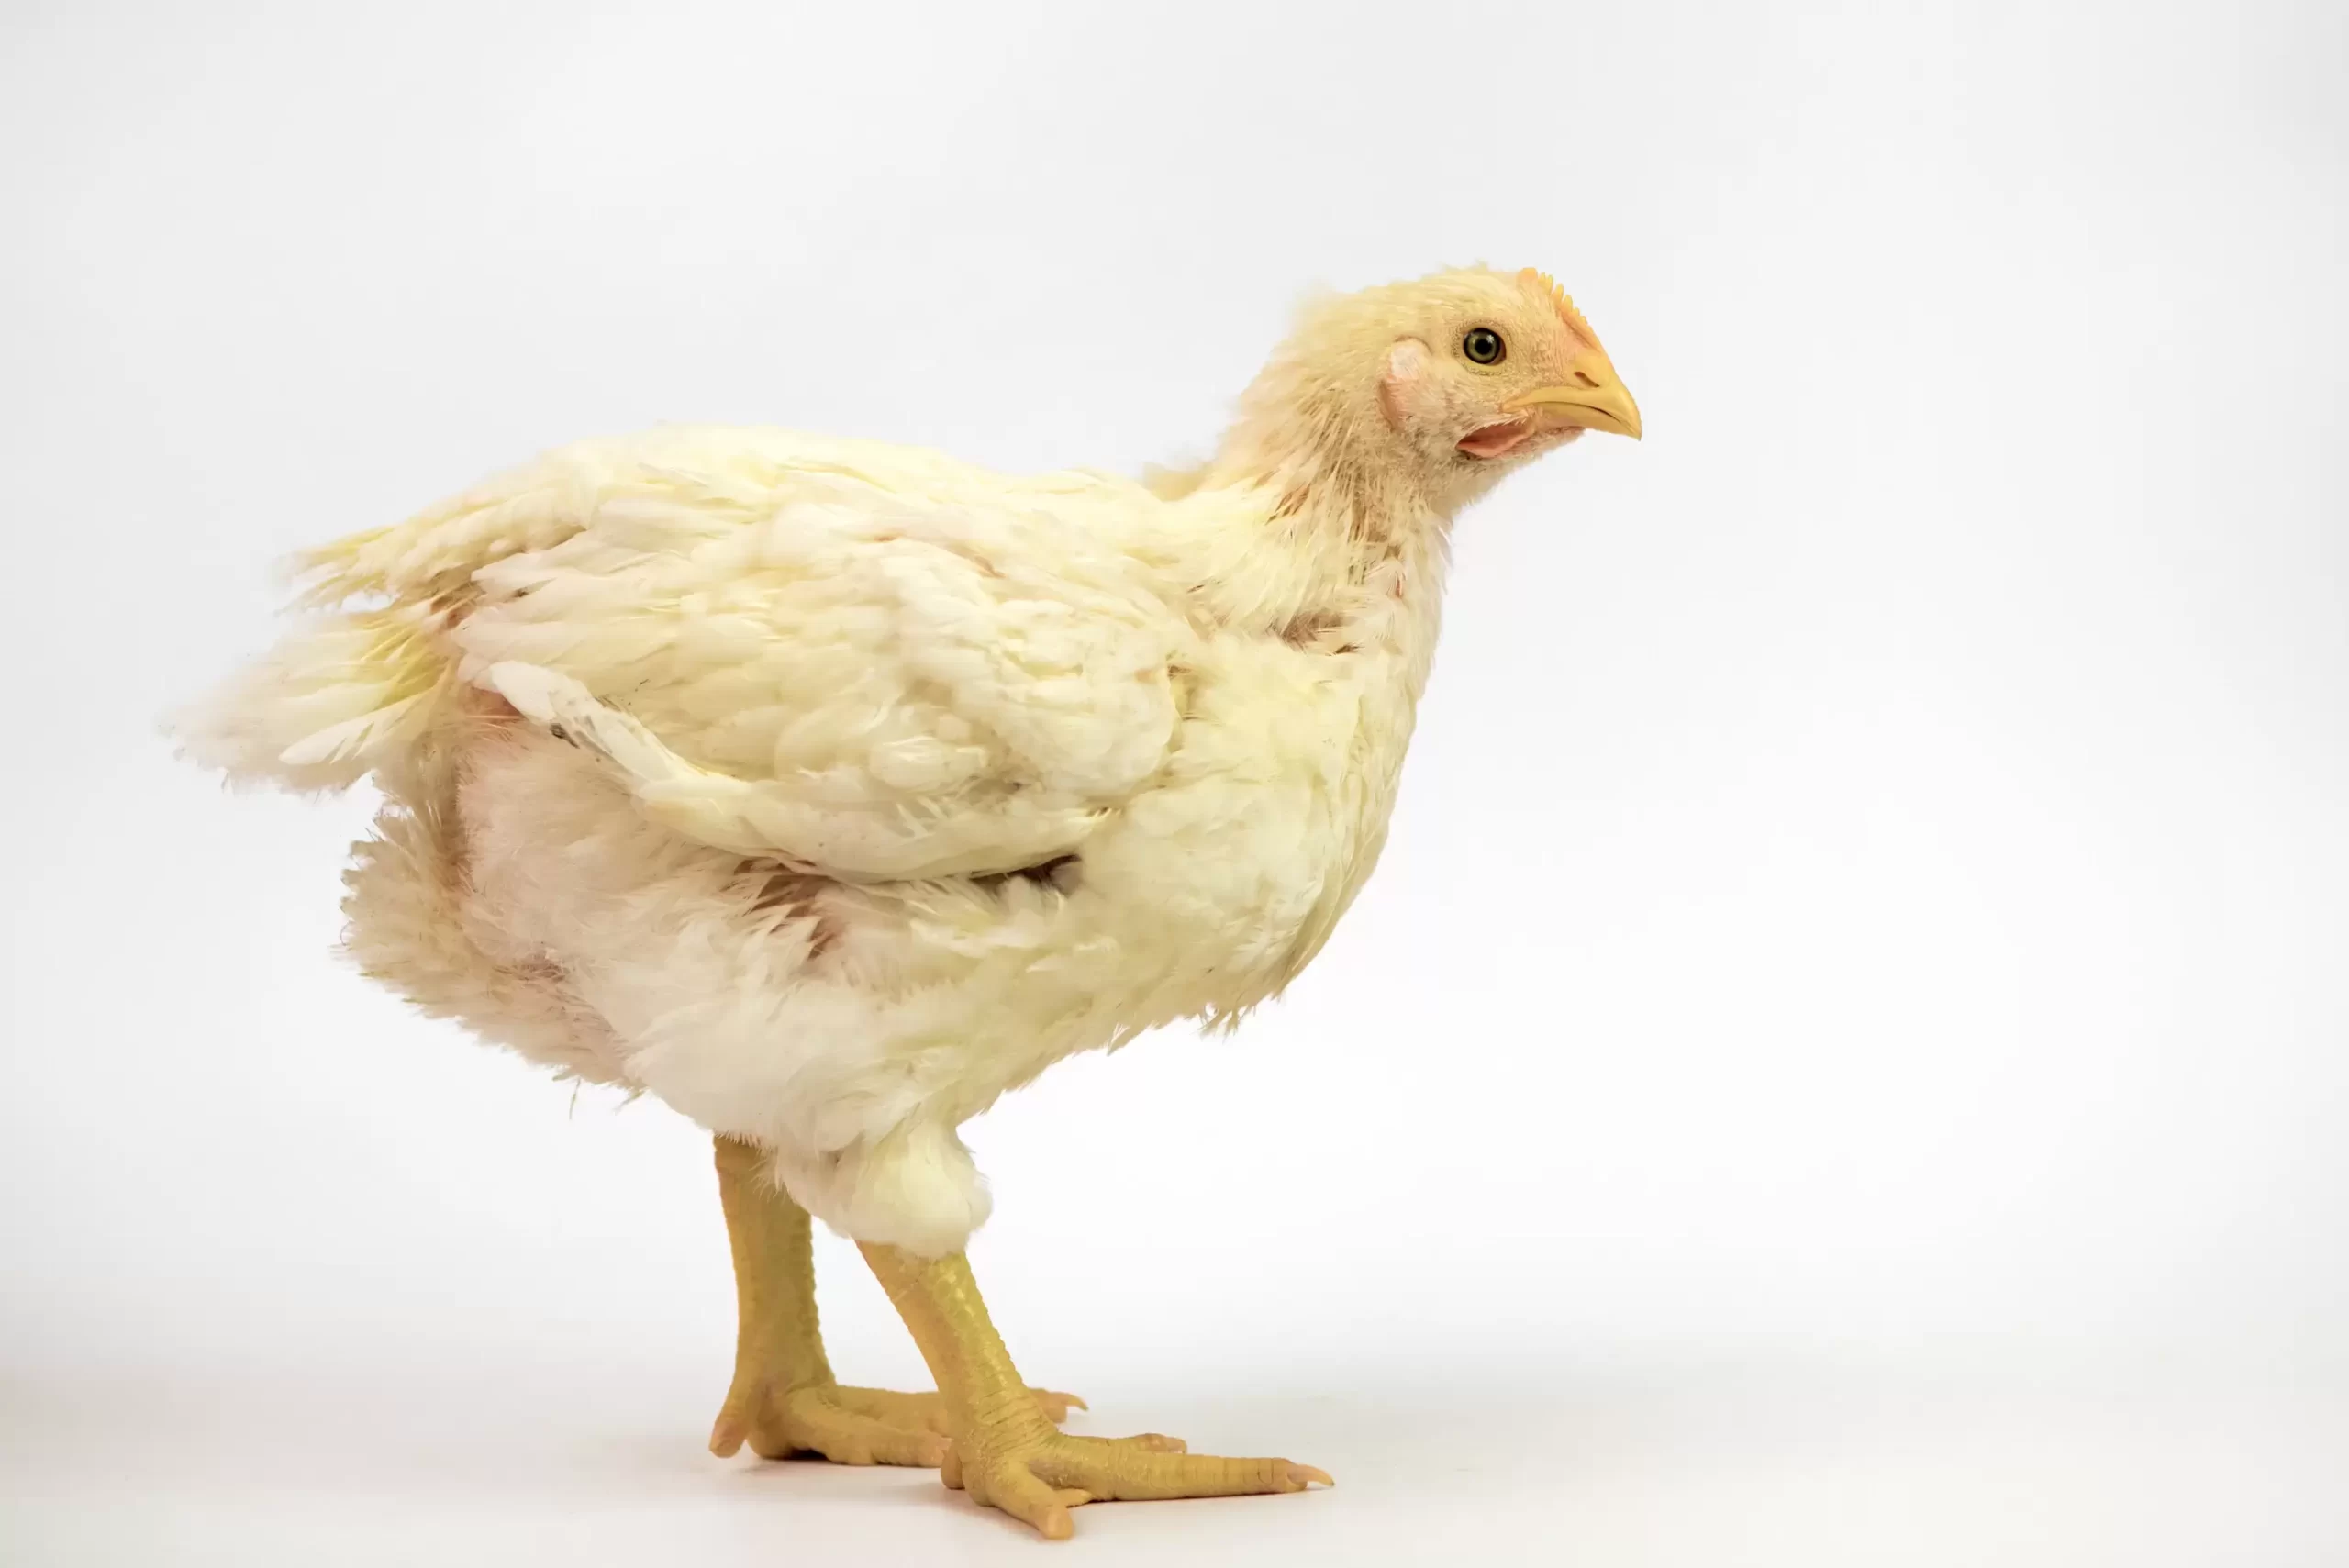 Obesidad en pollos de engorde modernos y pechuga de madera.  ¿Cuál es la relación?